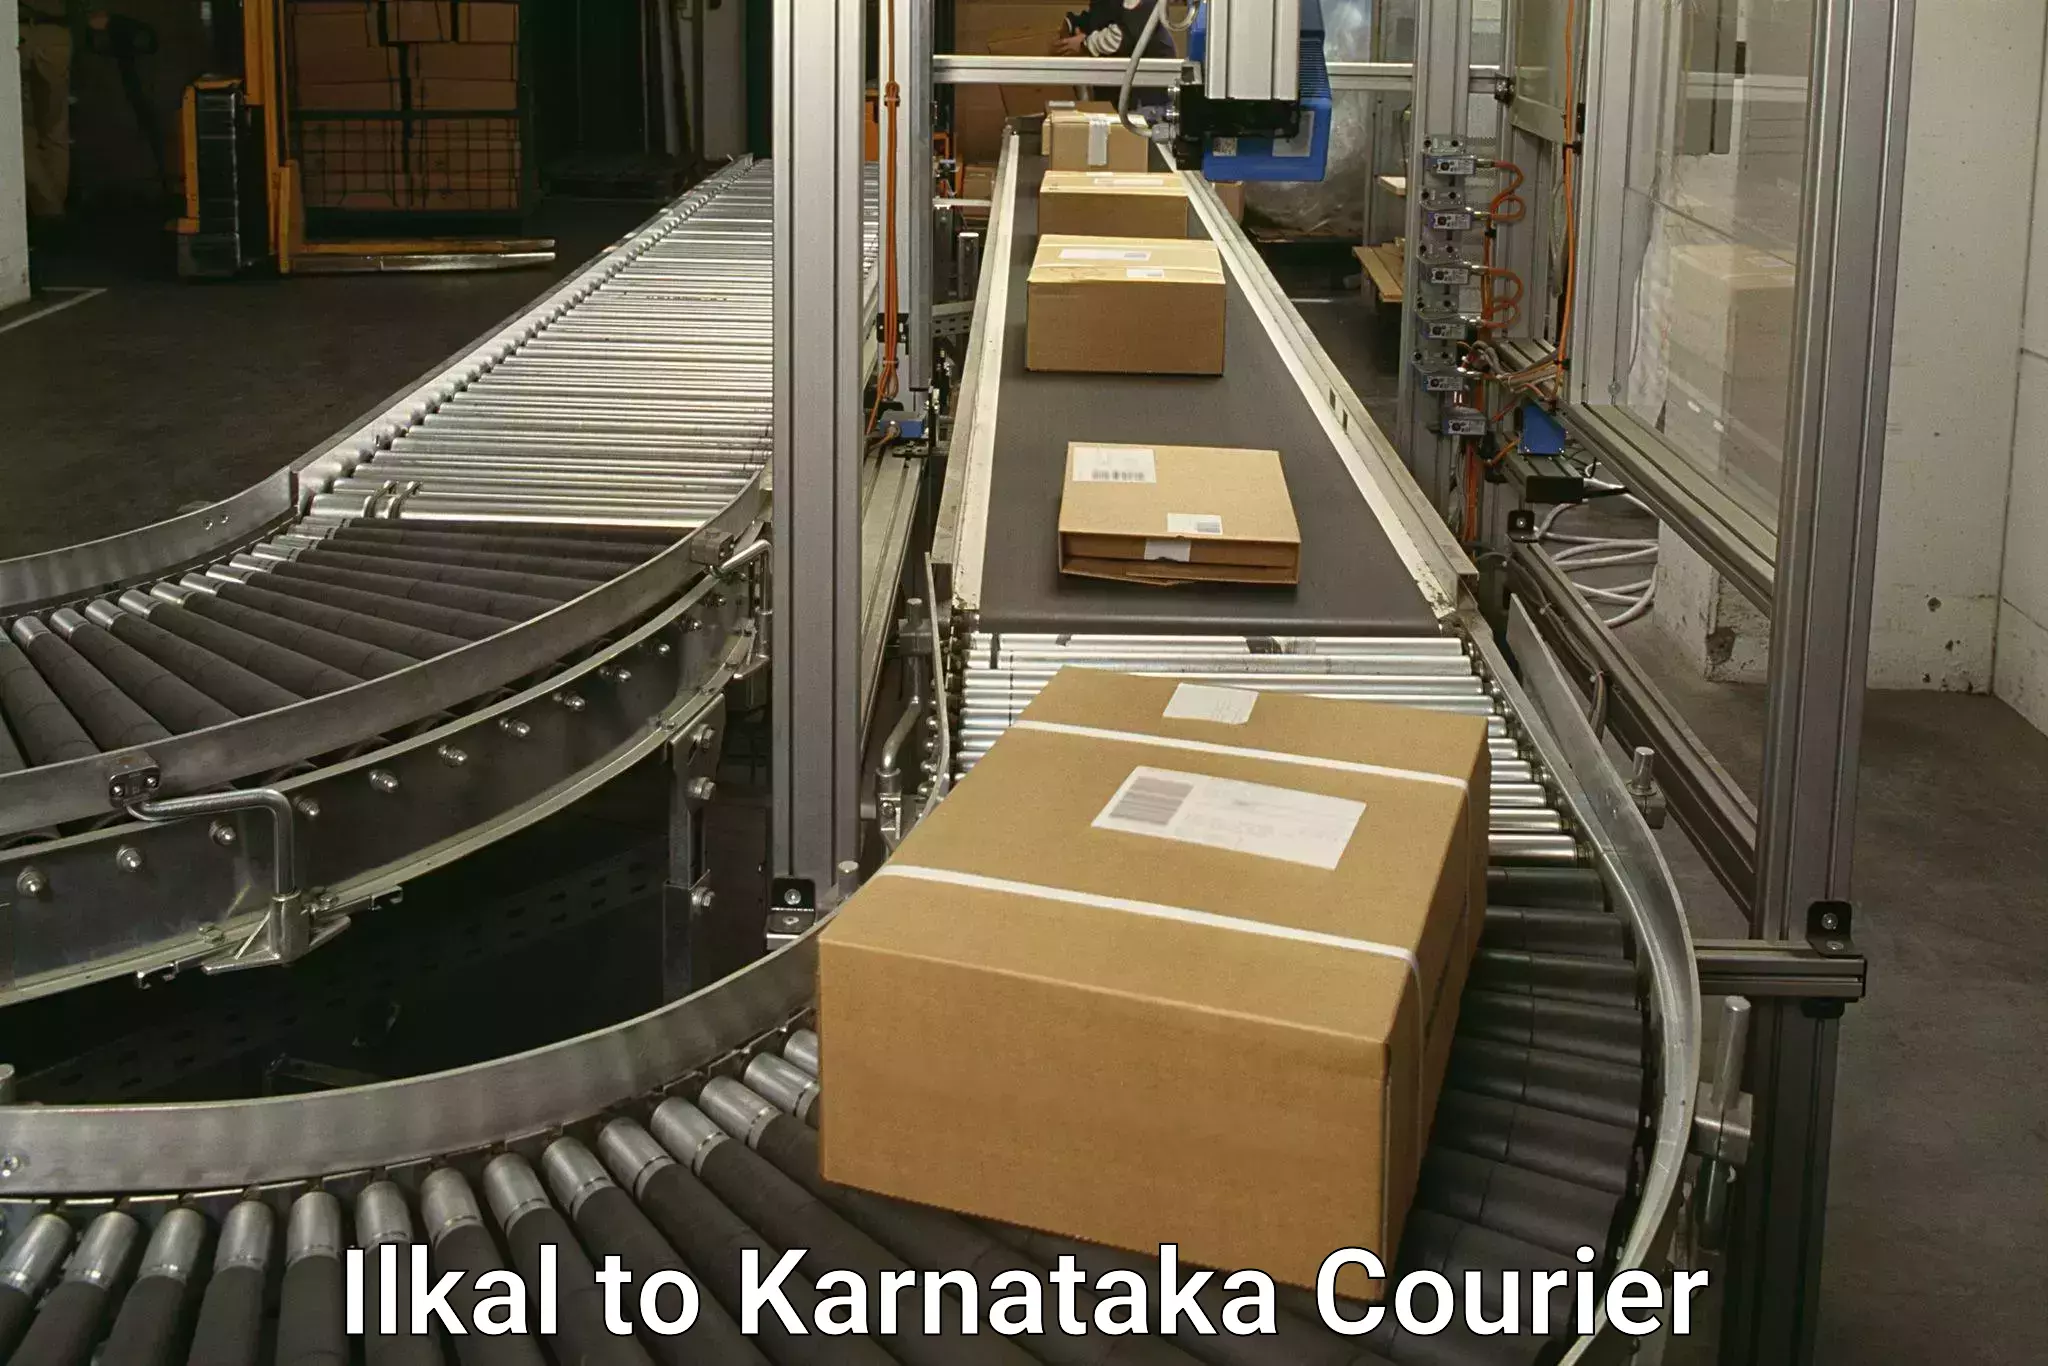 International courier networks Ilkal to Yenepoya Mangalore